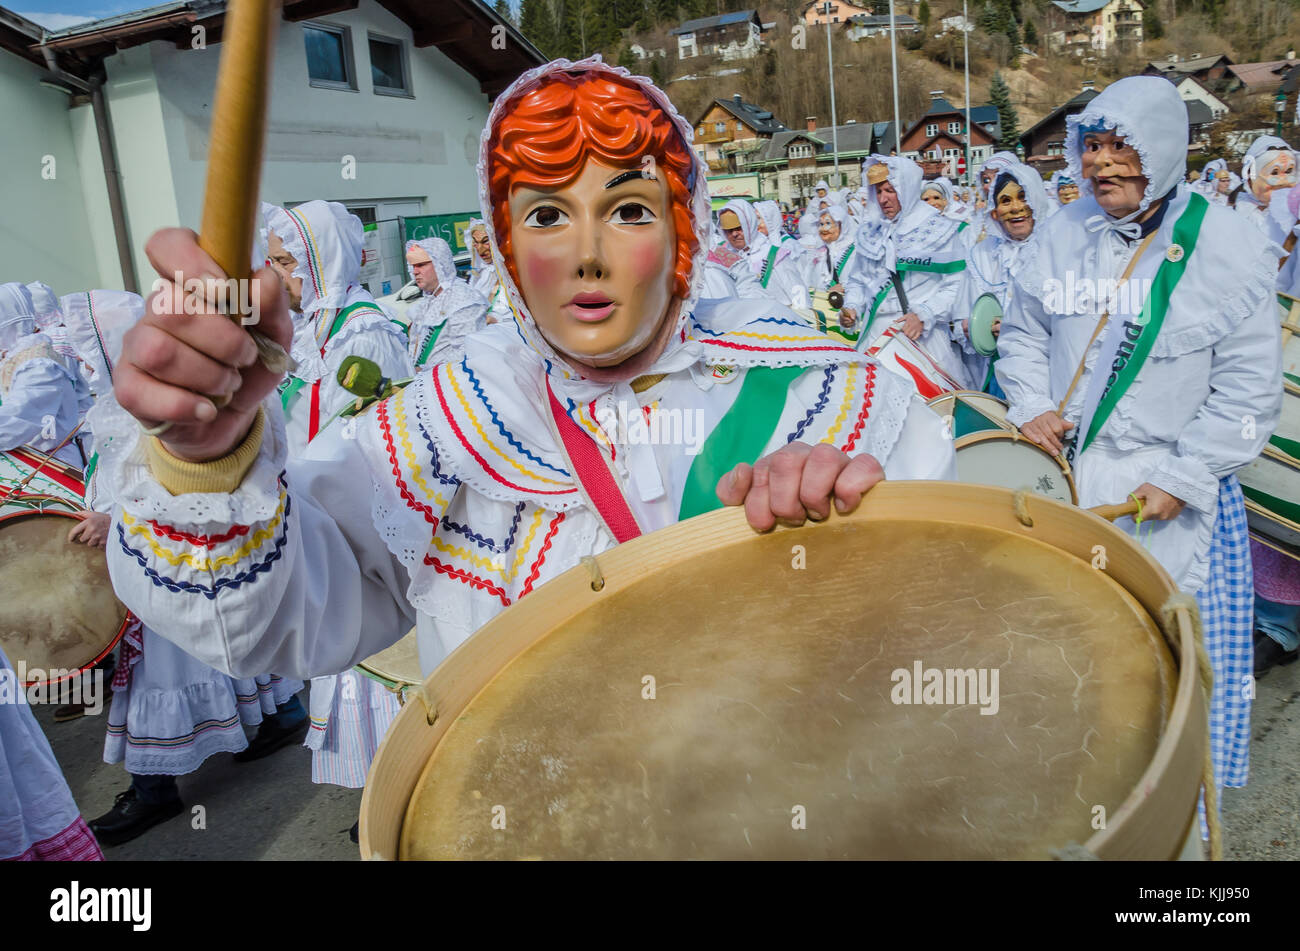 Esperienza leggendaria Aussee Carnevale in Austria: i tradizionali costumi di carnevale e costumi sono i tratti distintivi di questo fantastico evento in febbraio. Foto Stock